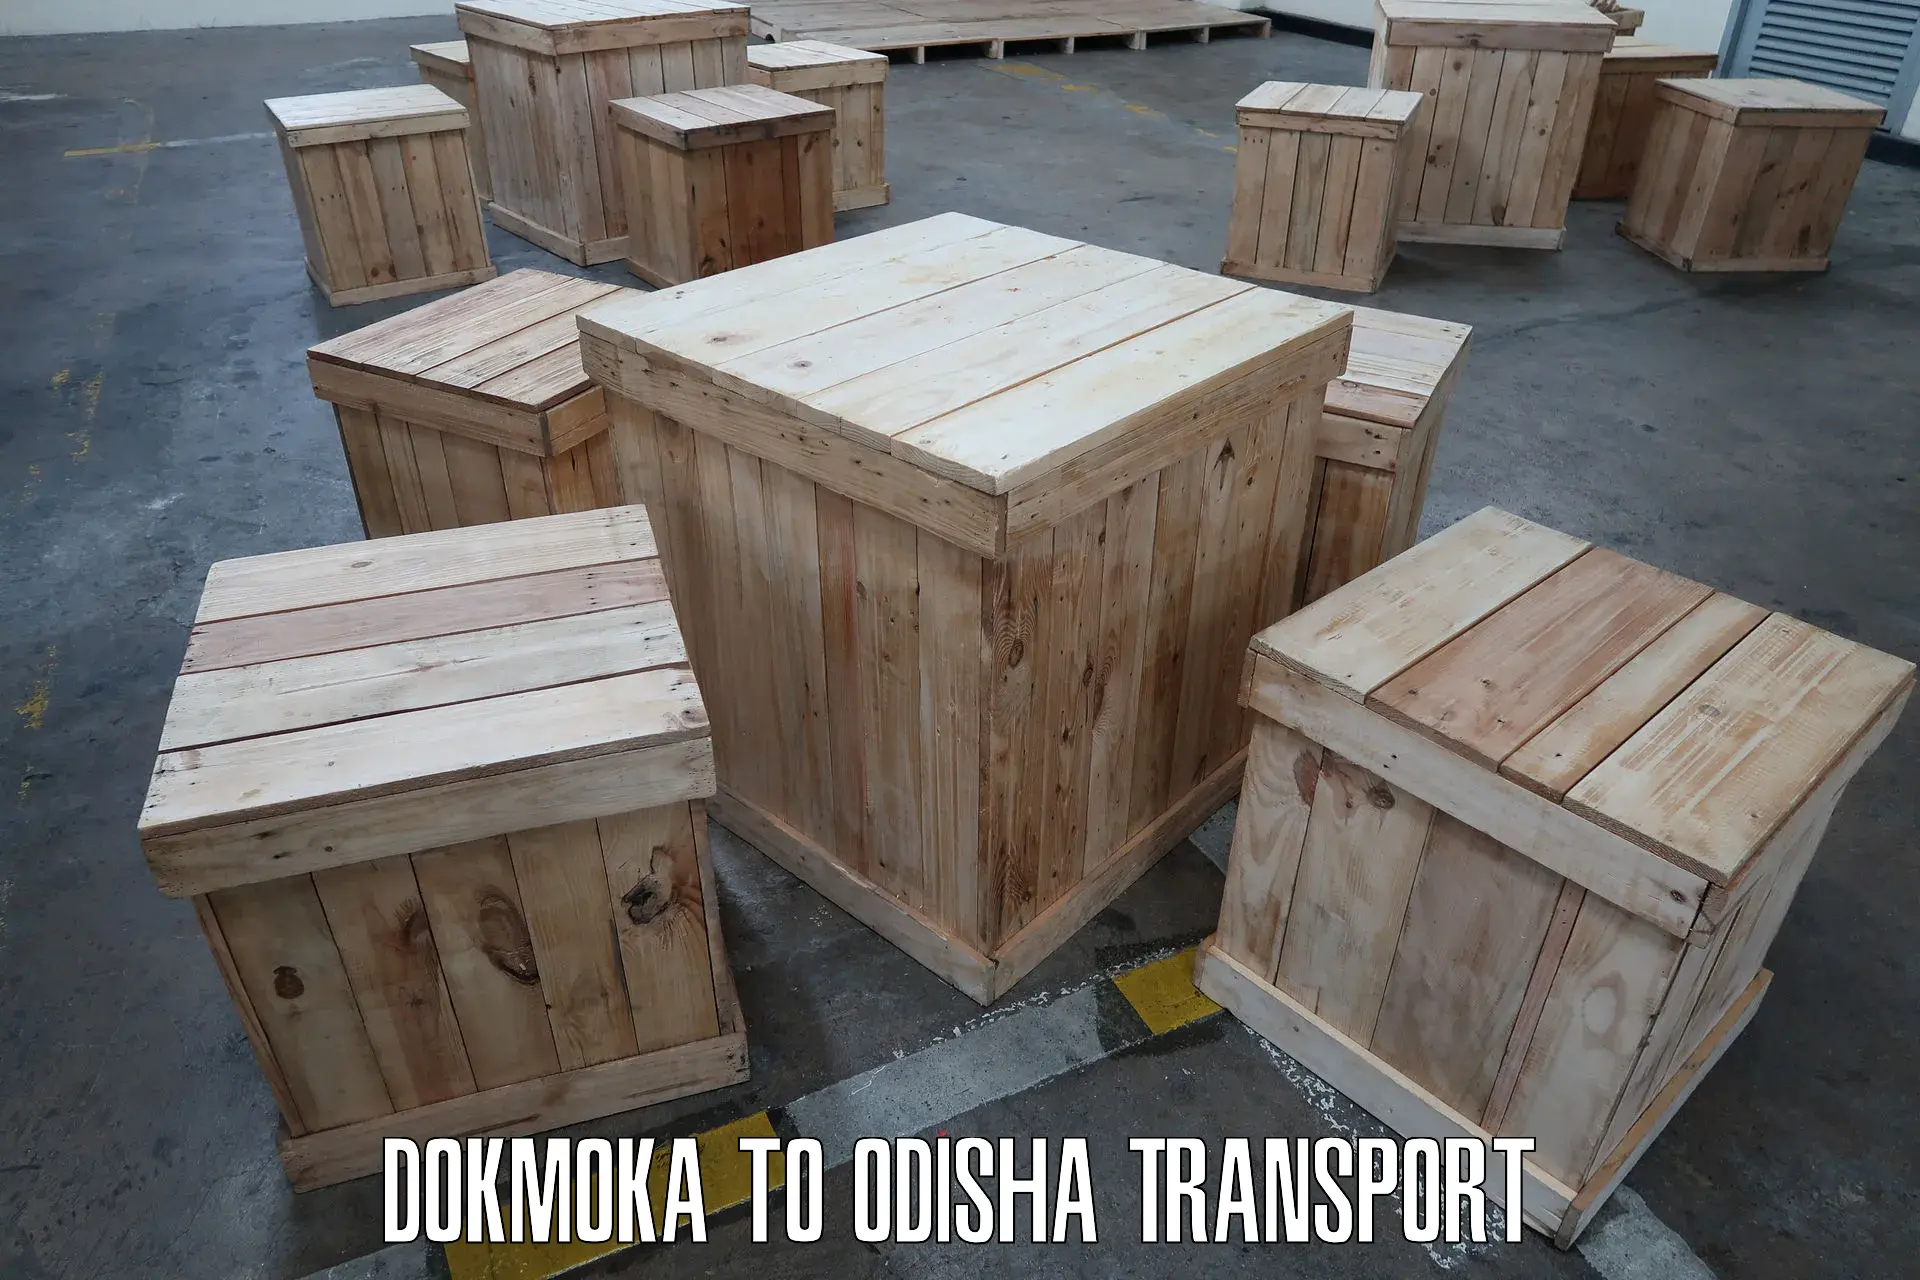 Truck transport companies in India Dokmoka to Kuchinda